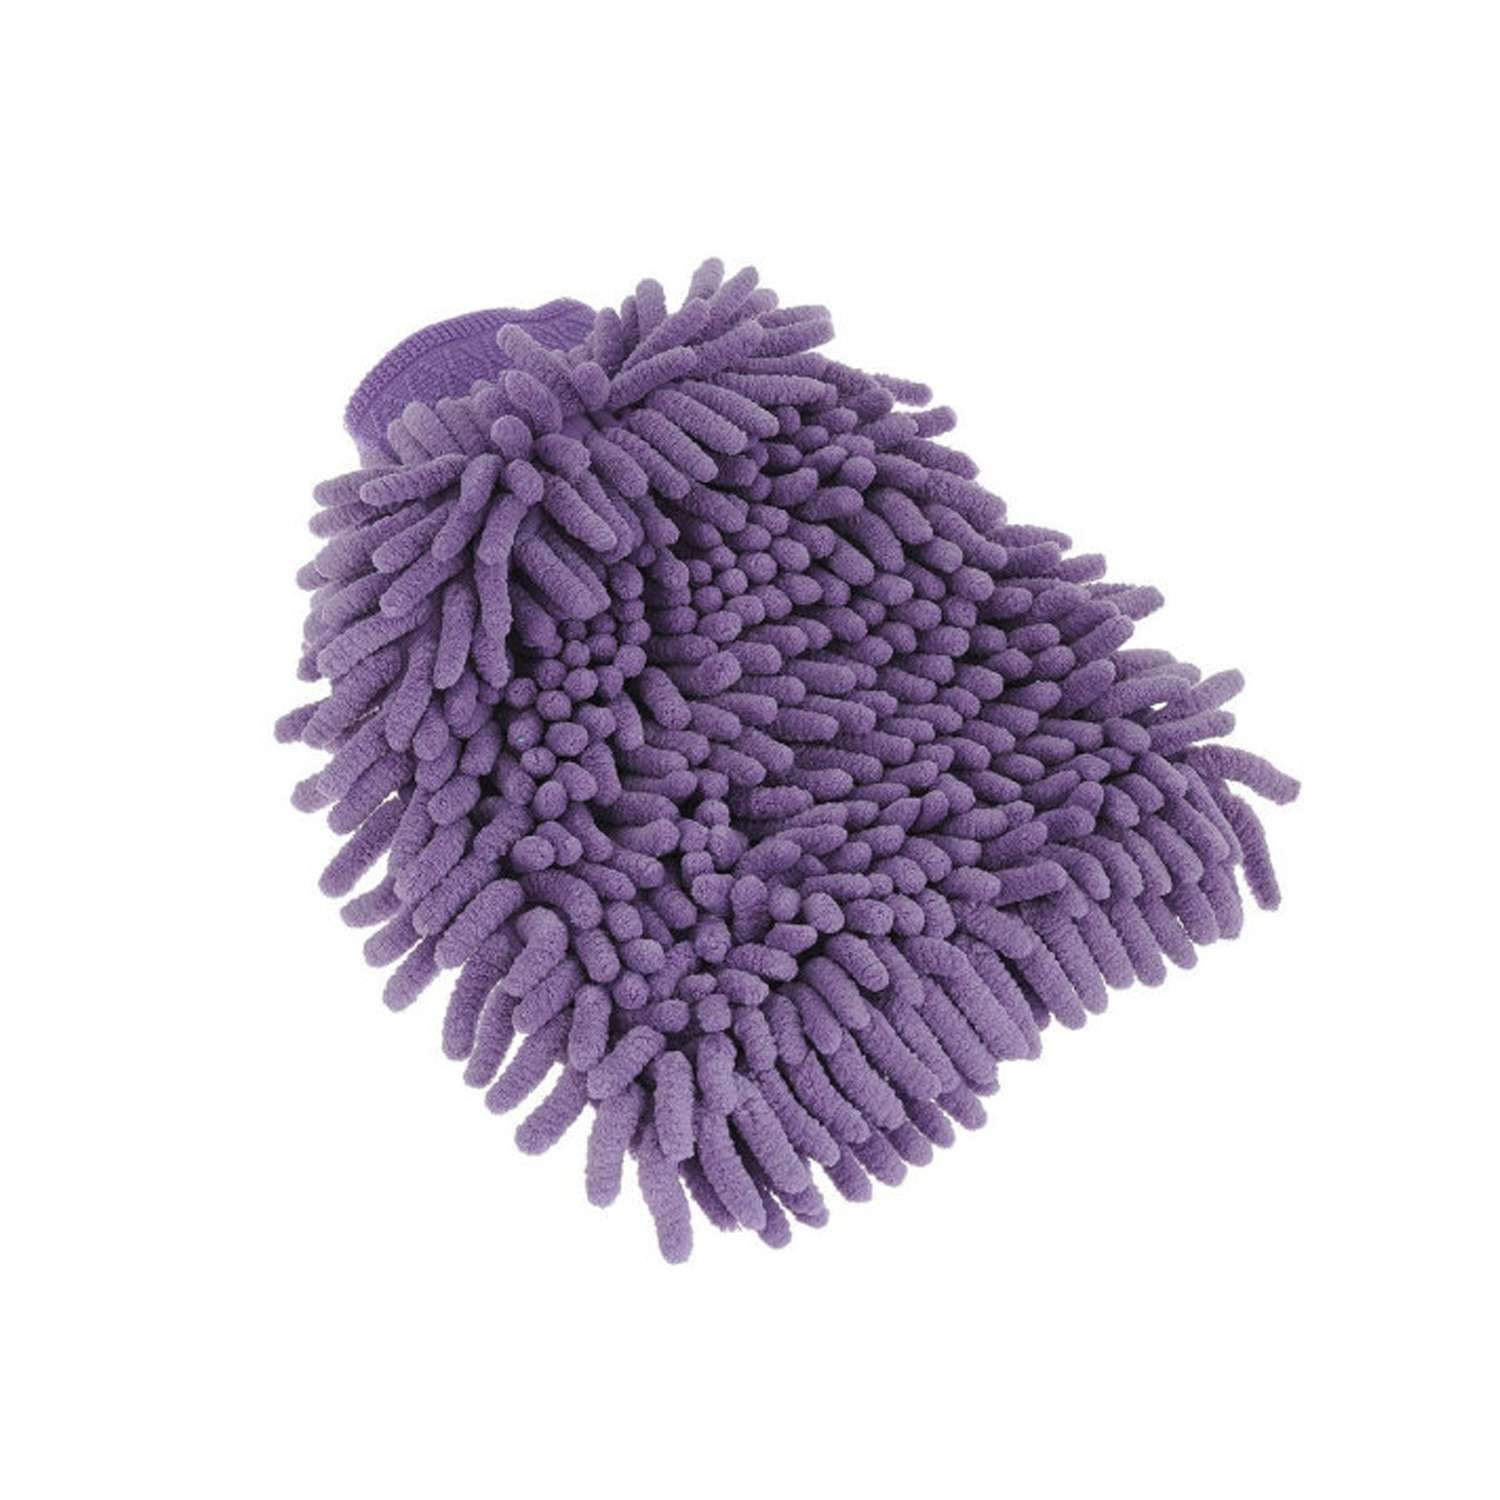 Тряпка-рукавица Ripoma микрофибра - фото 1